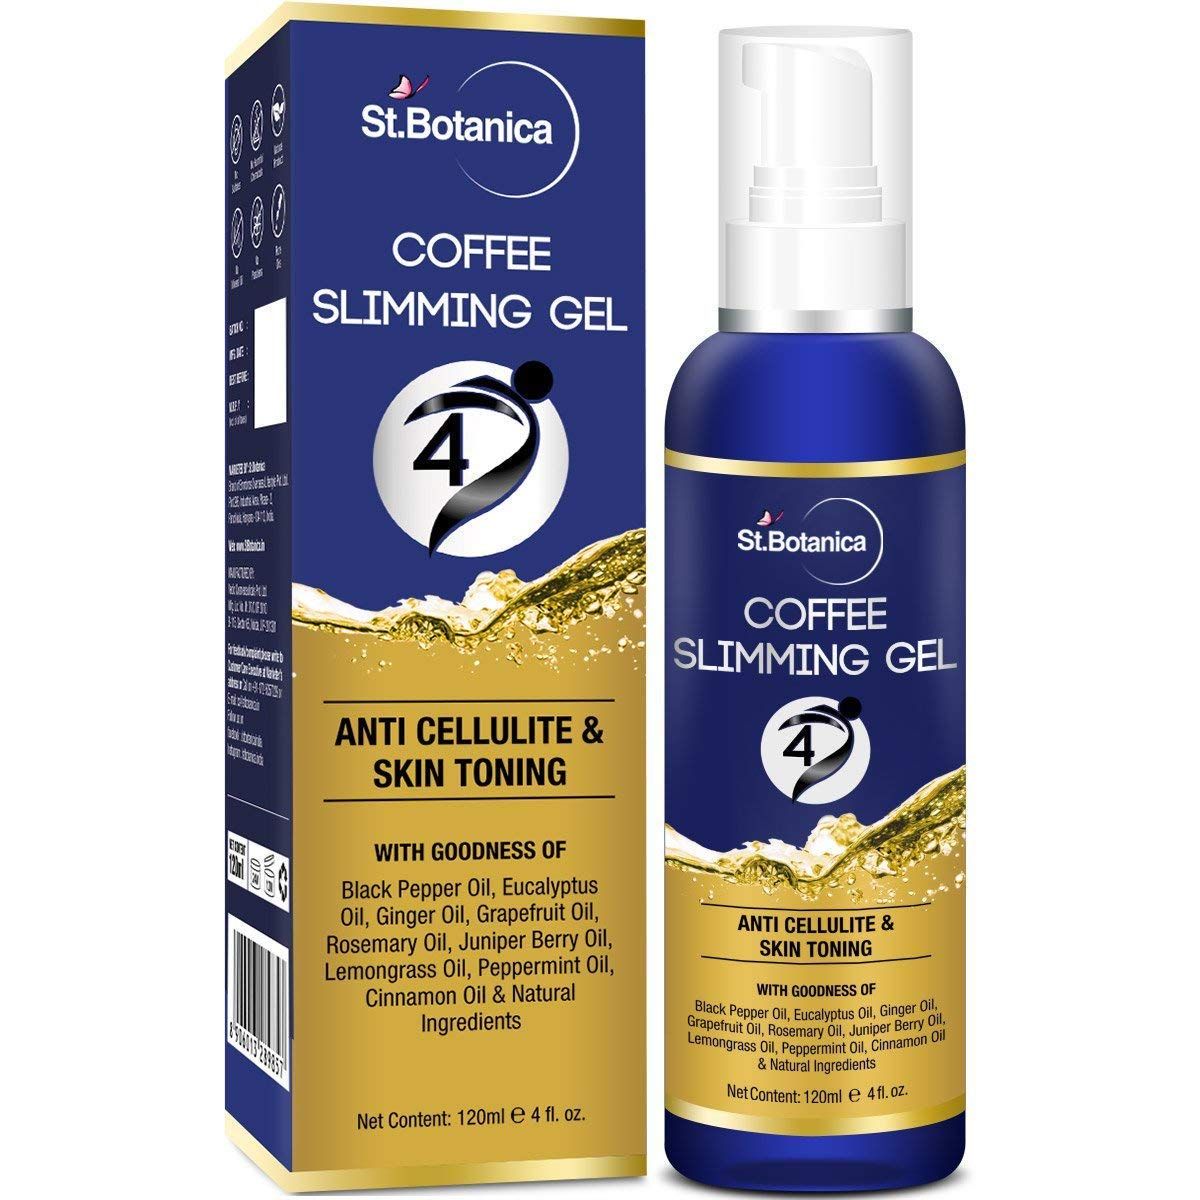 St.Botanica 4D Coffee Slimming Gel - Anti Cellulite & Skin Toning